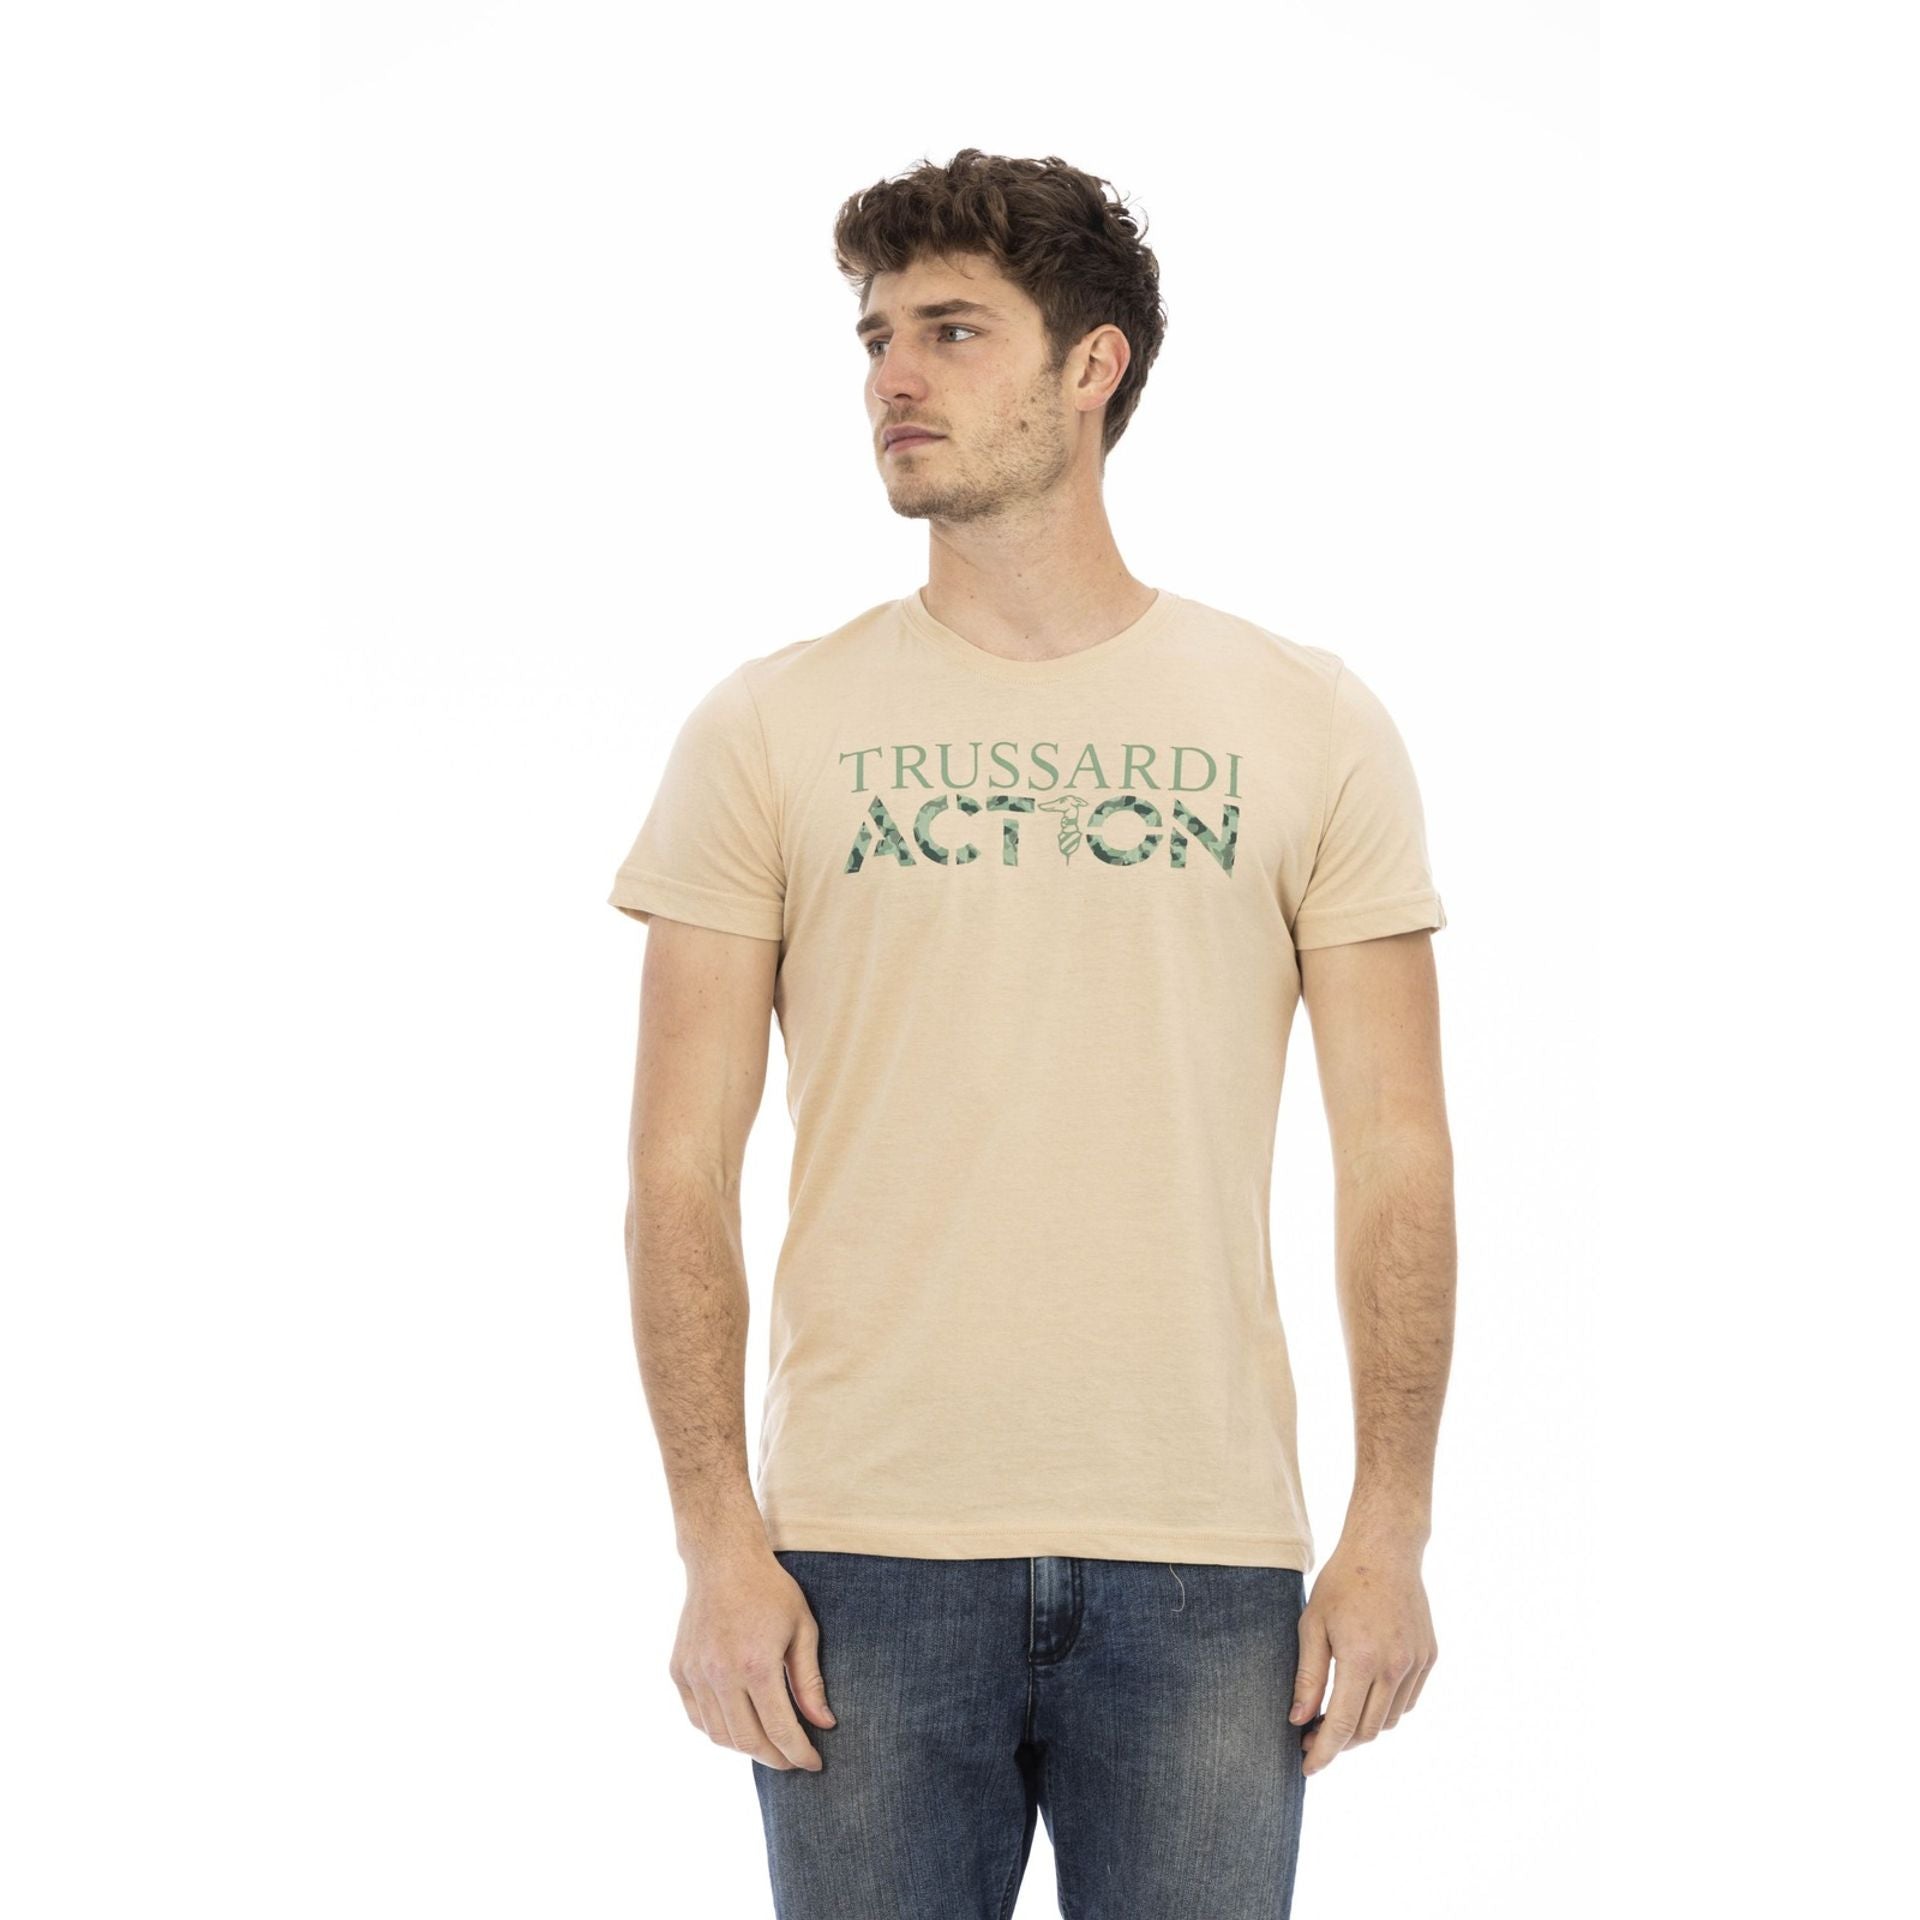 Trussardi Action T-shirt